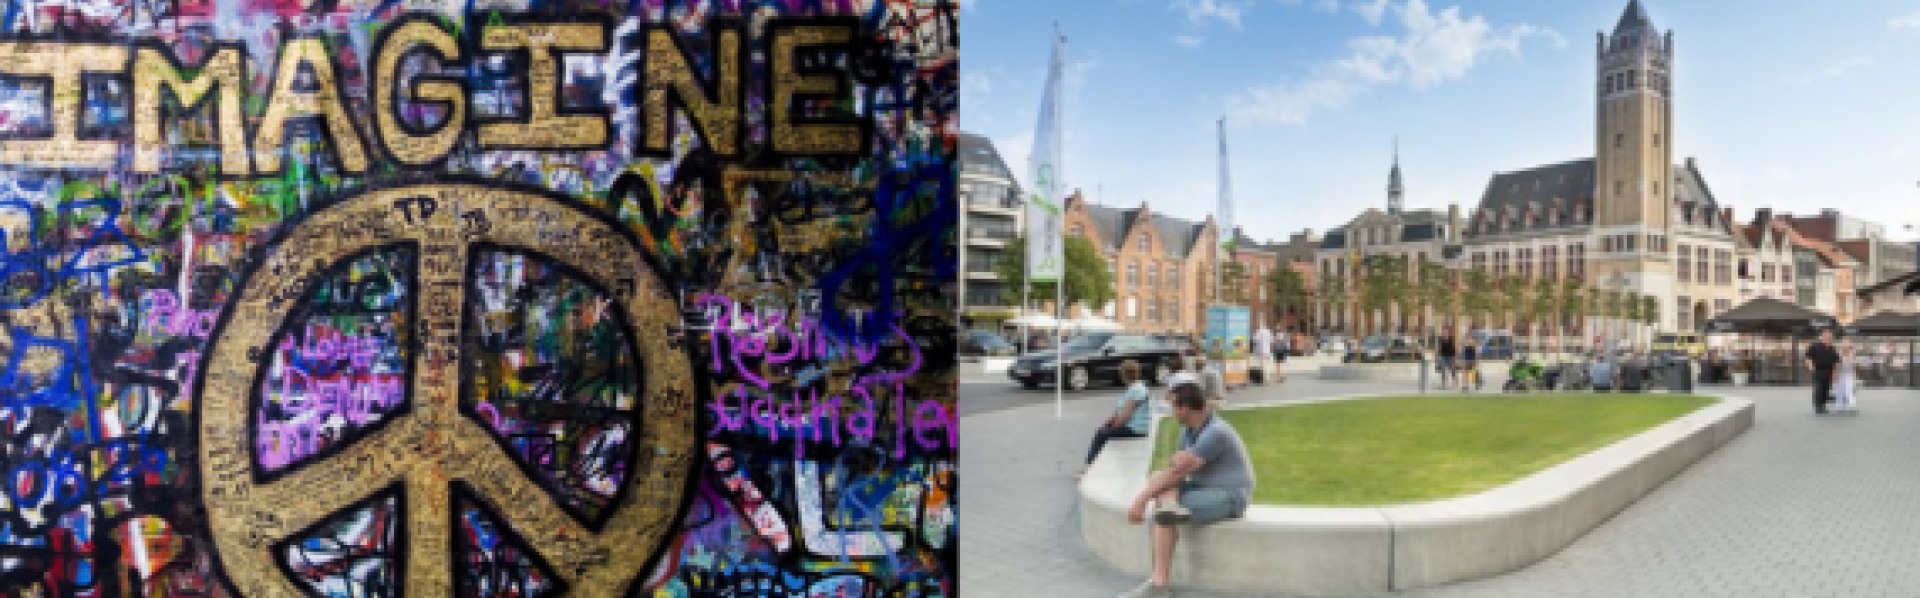 imagine peace graffiti op Lennon Wall en grote markt in Roeselare